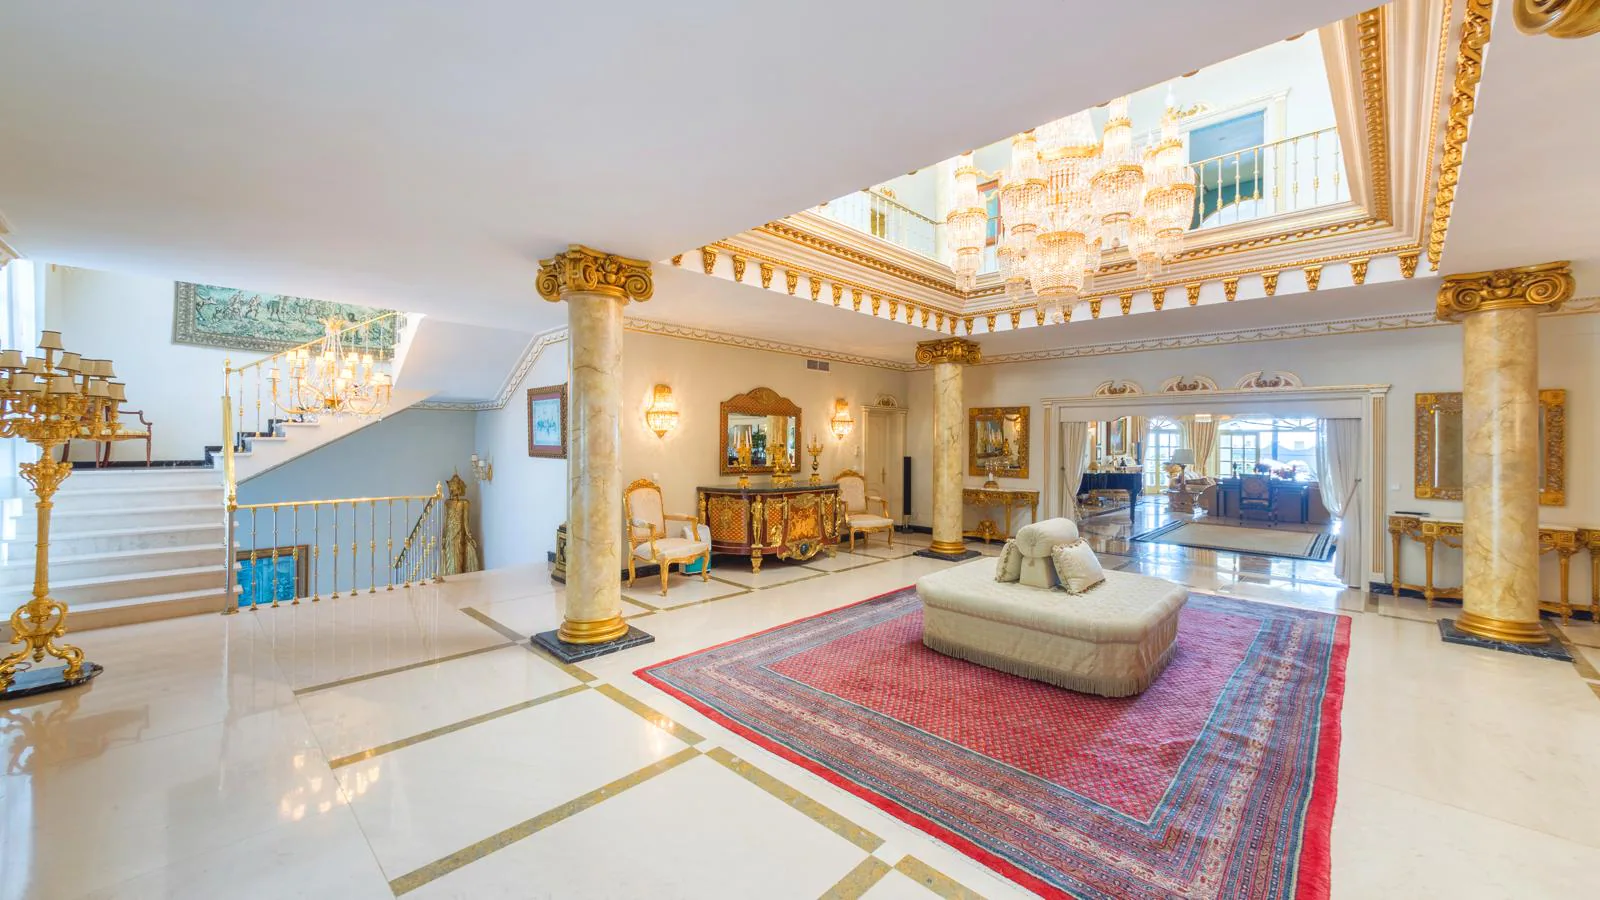 Villa El Martinete. La propiedad se vende -muebles de lujo incluídos- por 15.000.000 de euros